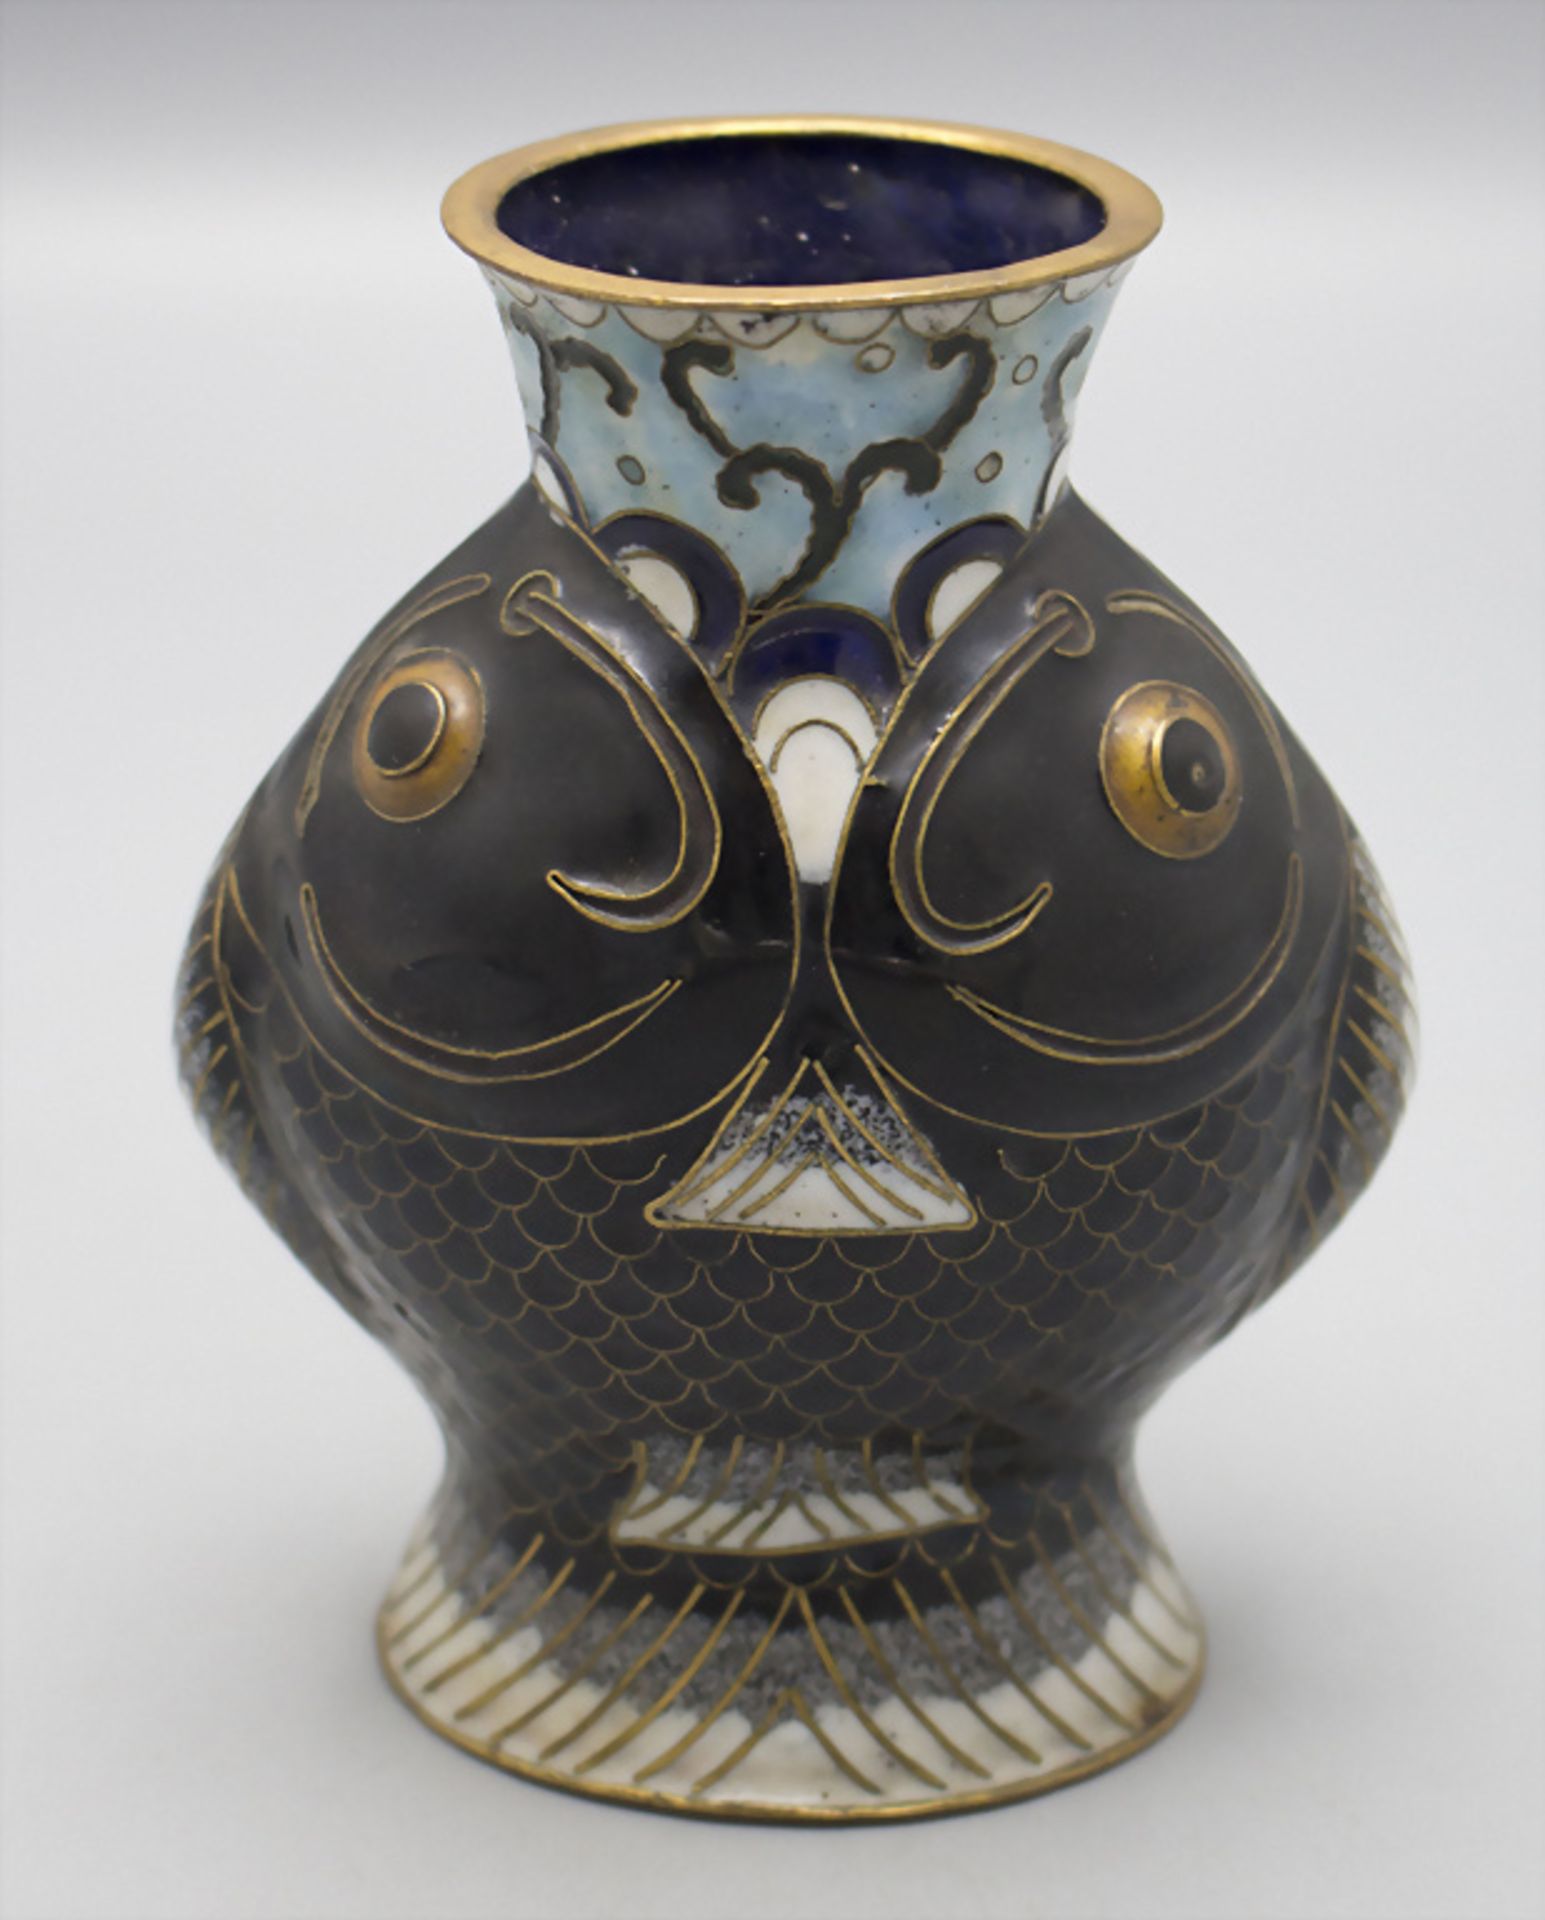 Seltene Cloisonné-Vase / A rare Cloisonné vase, China, späte Qing Dynastie (1644-1911)